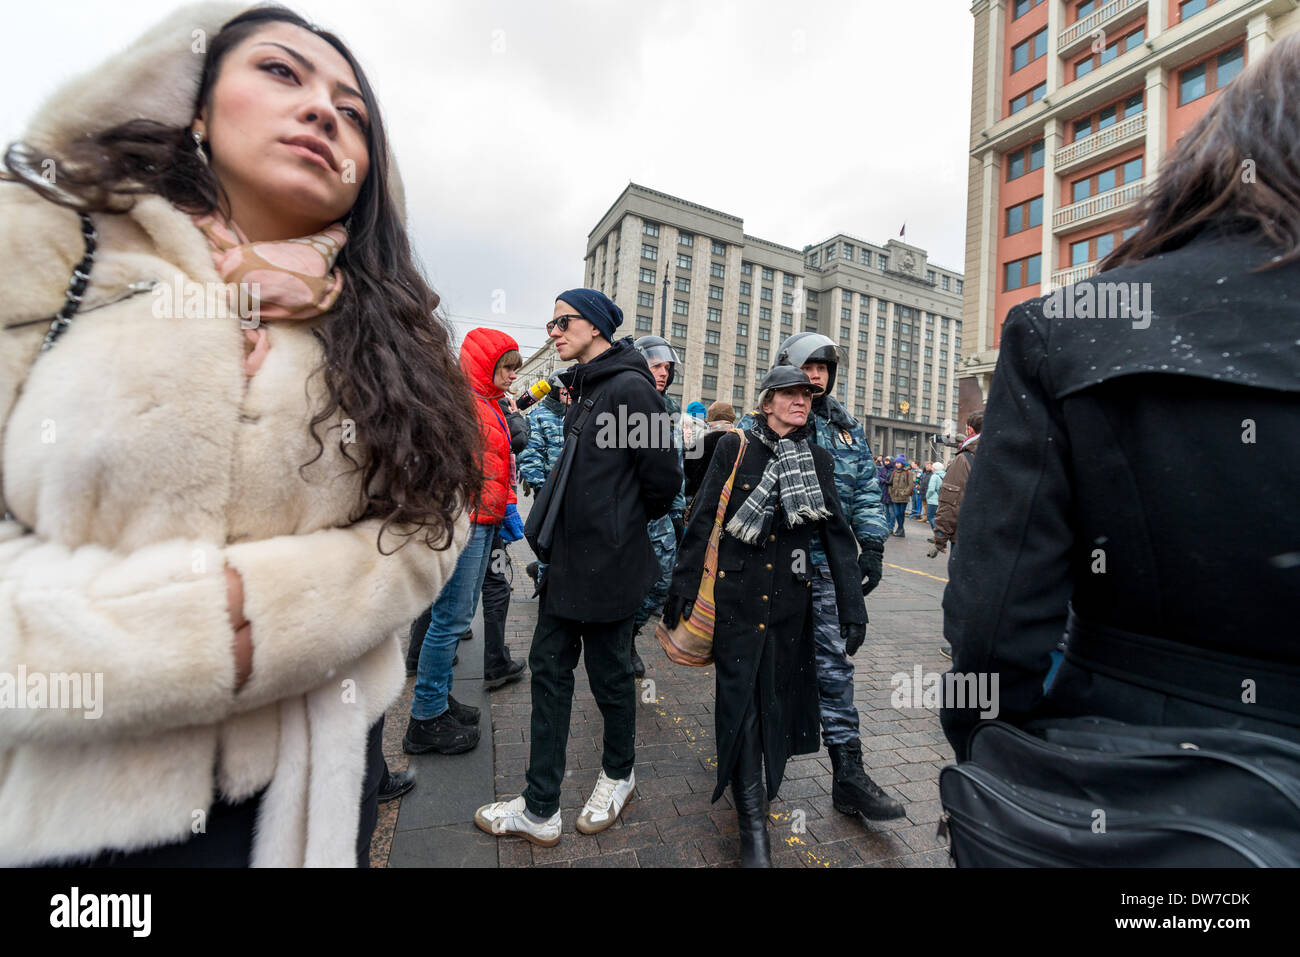 La polizia ousts manifestanti dalla piazza. Protesta contro le truppe russe in Ucraina a Mosca, Manezhnaya Square il 2 marzo, 2014 Foto Stock